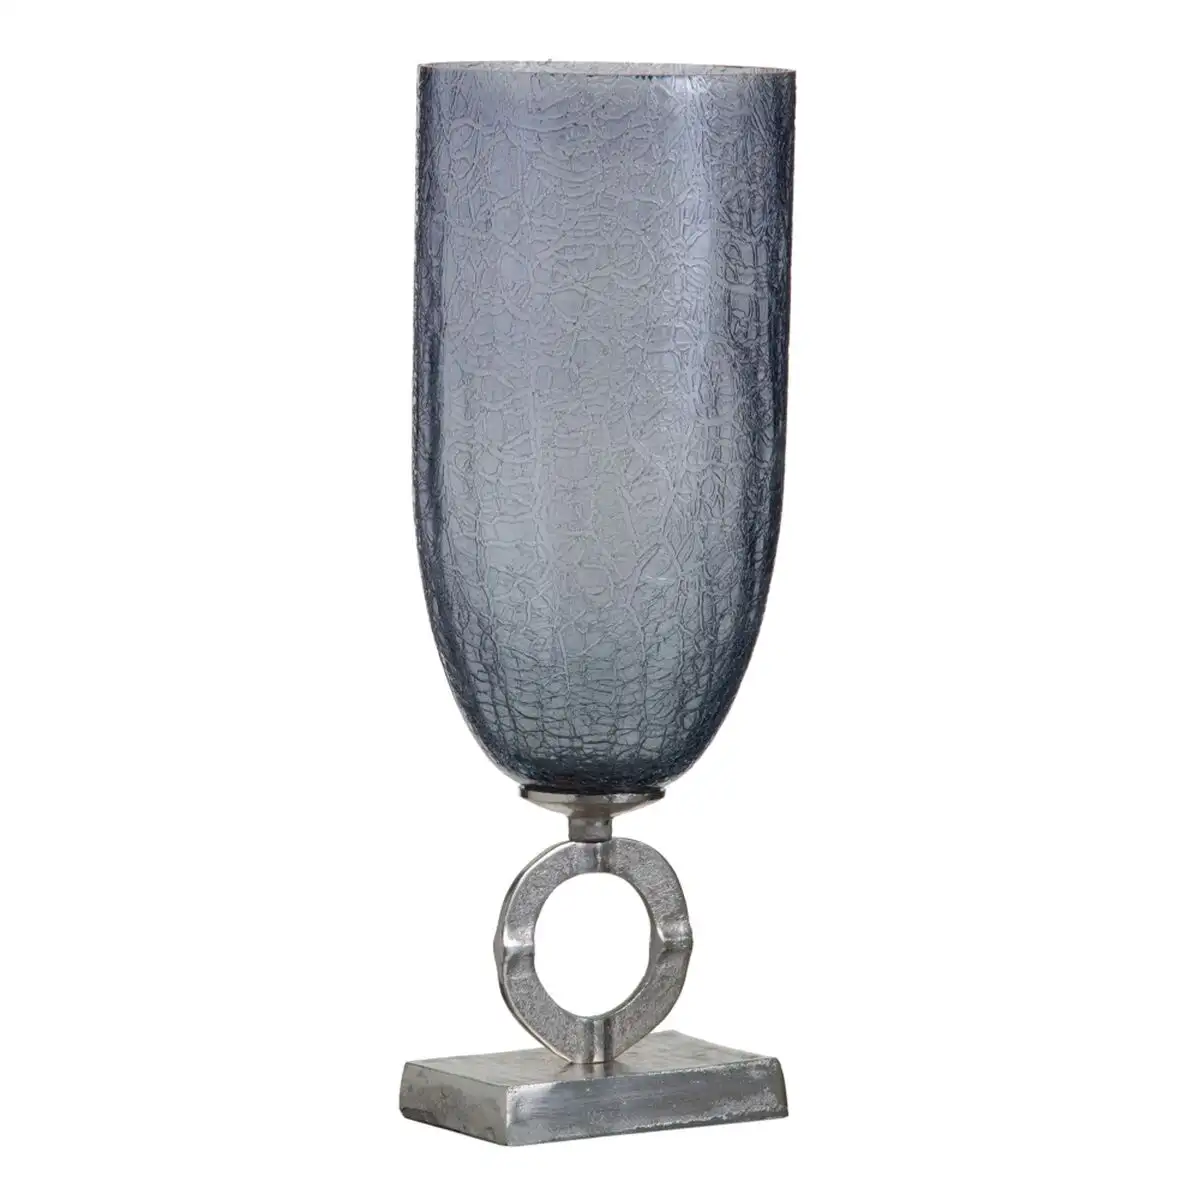 Vase 17 x 17 x 47 cm verre gris metal argent_1787. DIAYTAR SENEGAL - Où la Tradition Renouvelée Rencontre l'Innovation. Explorez notre gamme de produits qui fusionnent l'héritage culturel avec les besoins contemporains.